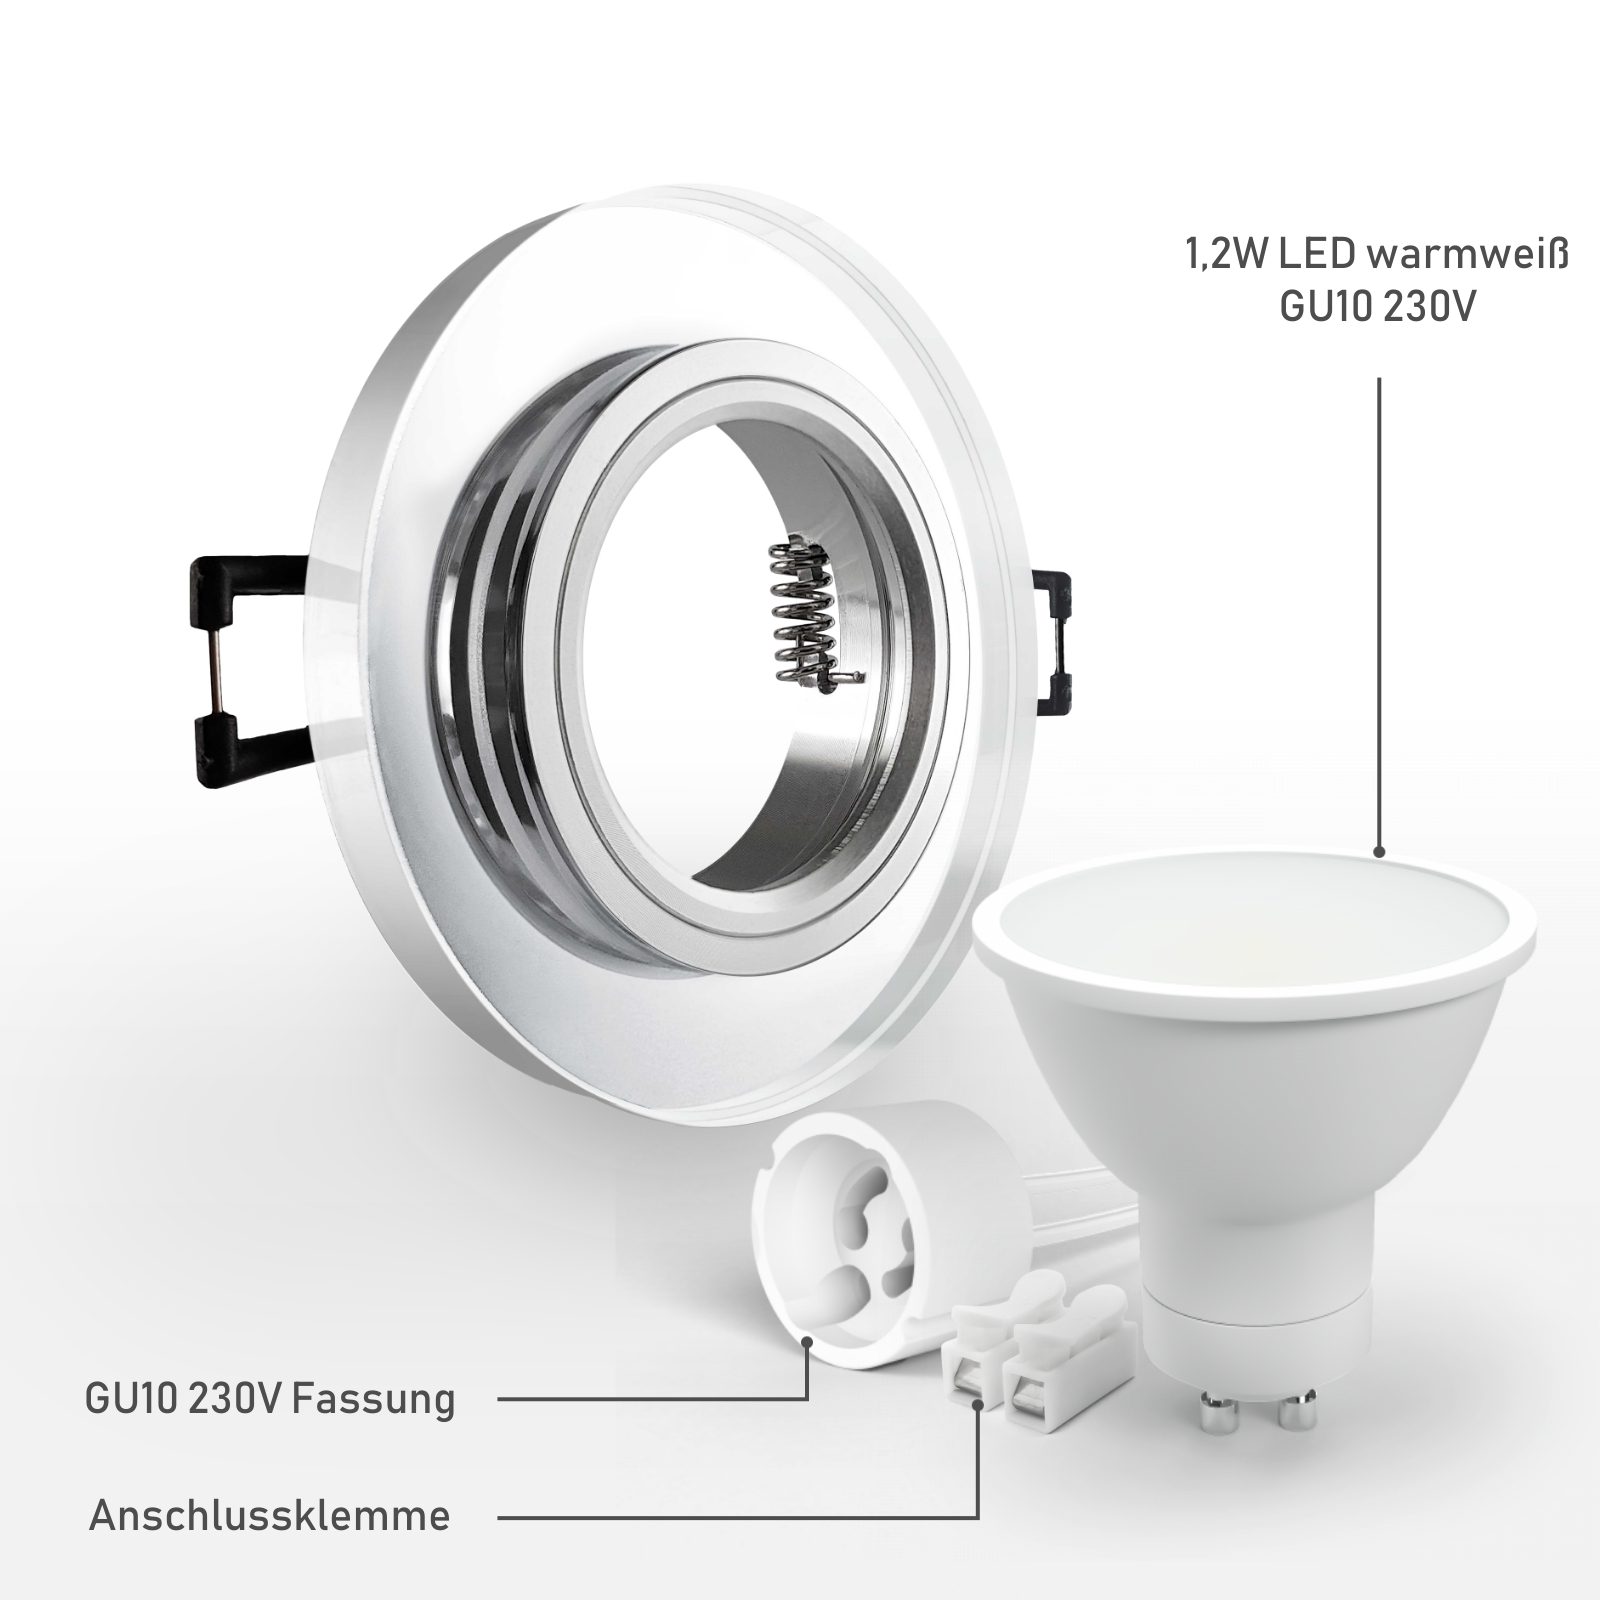 LED Einbaustrahler spiegelnd | rund Echtglas | Lochmaß Ø 68mm - 75mm | Einbautiefe 64mm | Anschlussfertig mit GU10 230V Fassung  inkl. 1,2W LED warmweiß GU10 230V